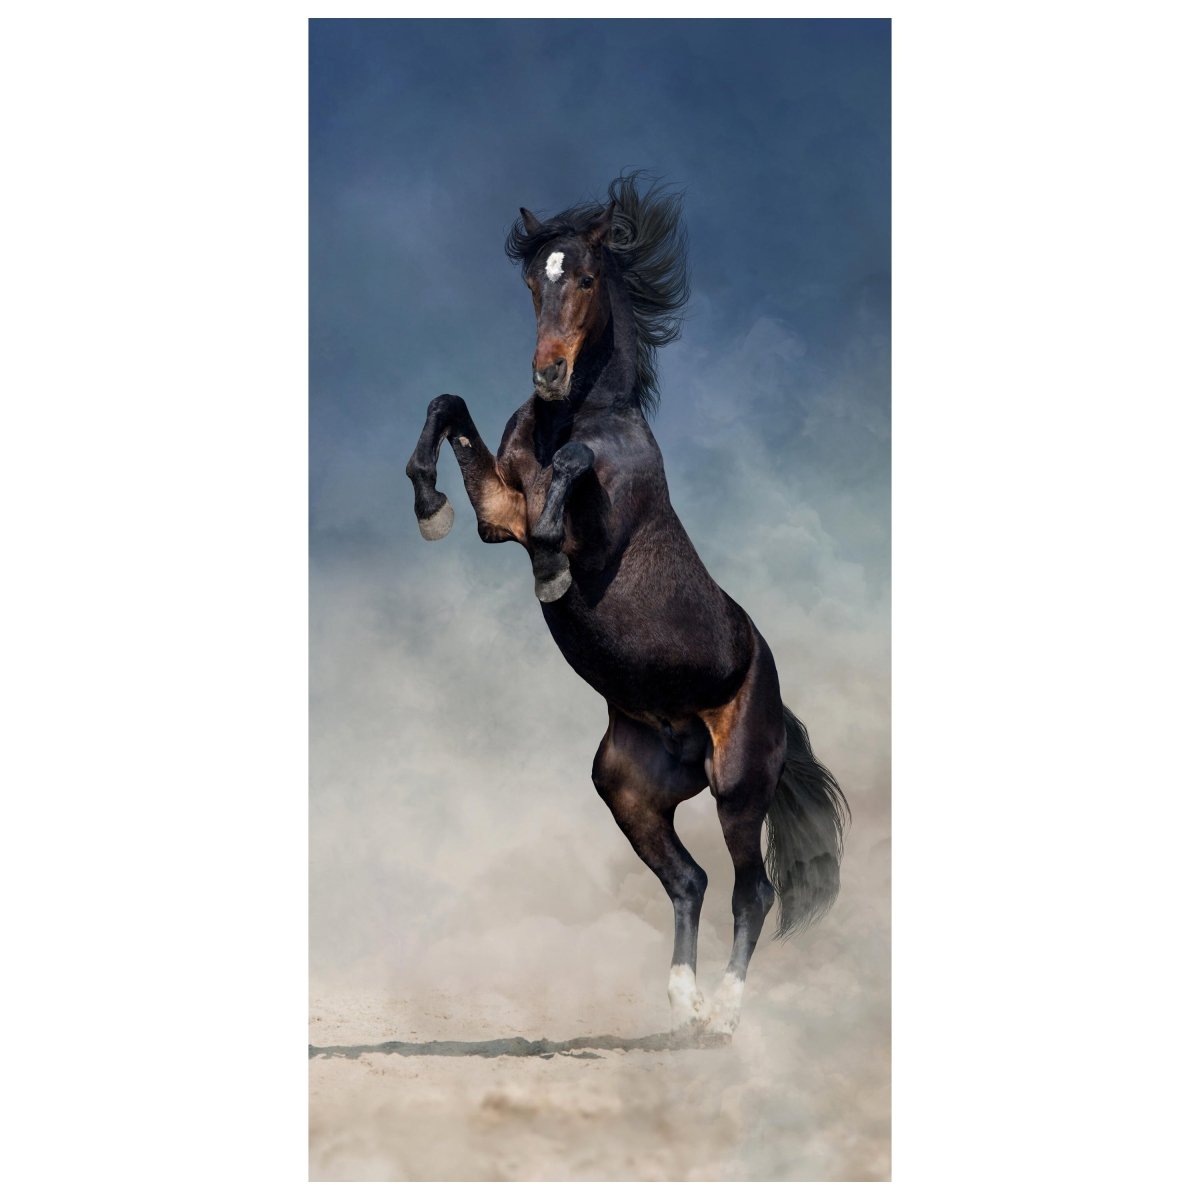 Türtapete Pferd im Sand, Schwarz, Braun, Staub M1172 - Bild 2